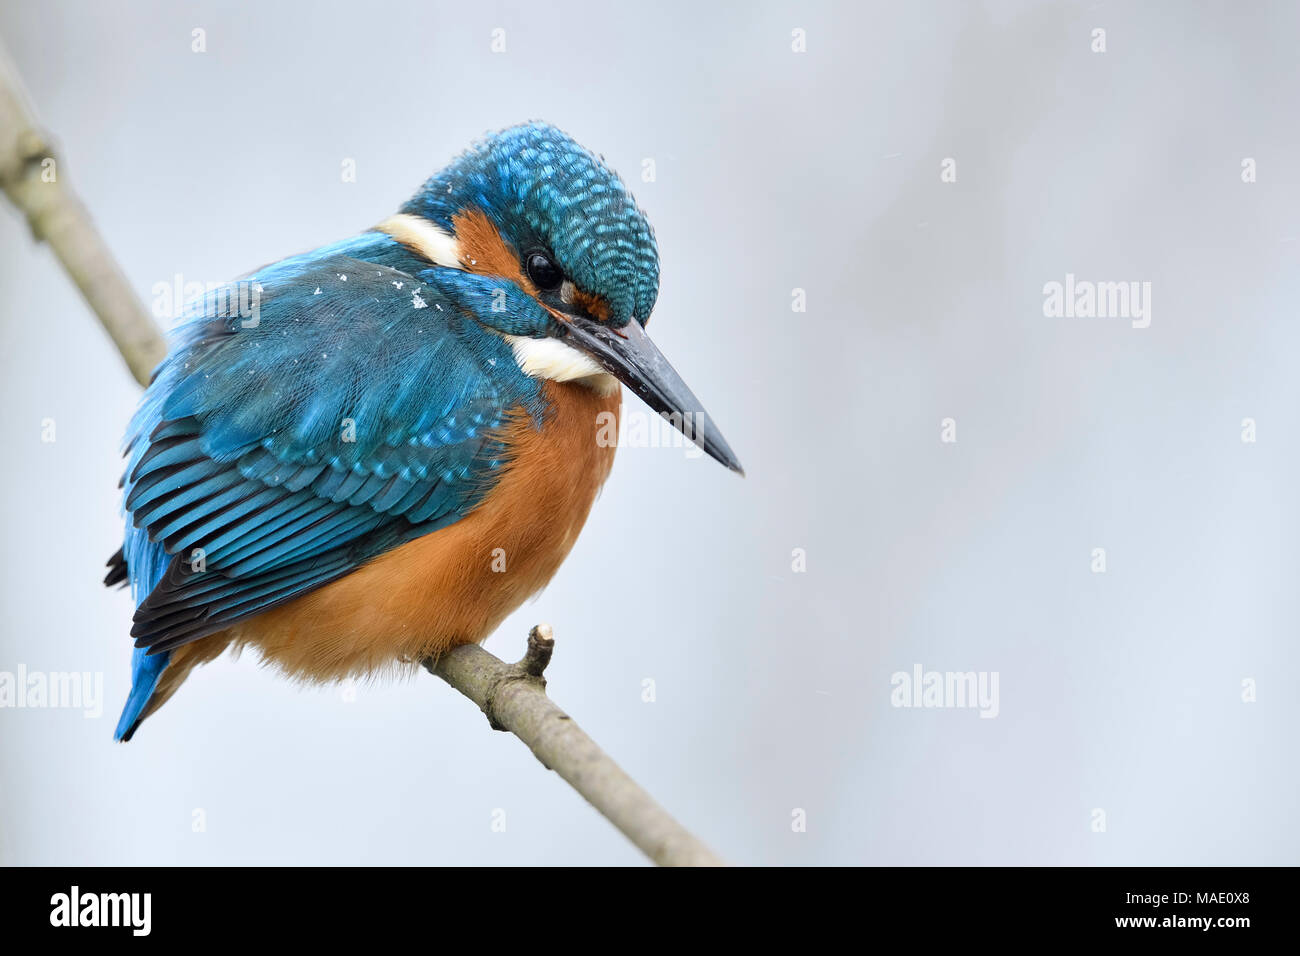 Kingfisher eurasien Alcedo atthis Optimize ( / ), homme en hiver, perché sur une branche avec des flocons de neige sur le dos, de la faune, de l'Europe. Banque D'Images